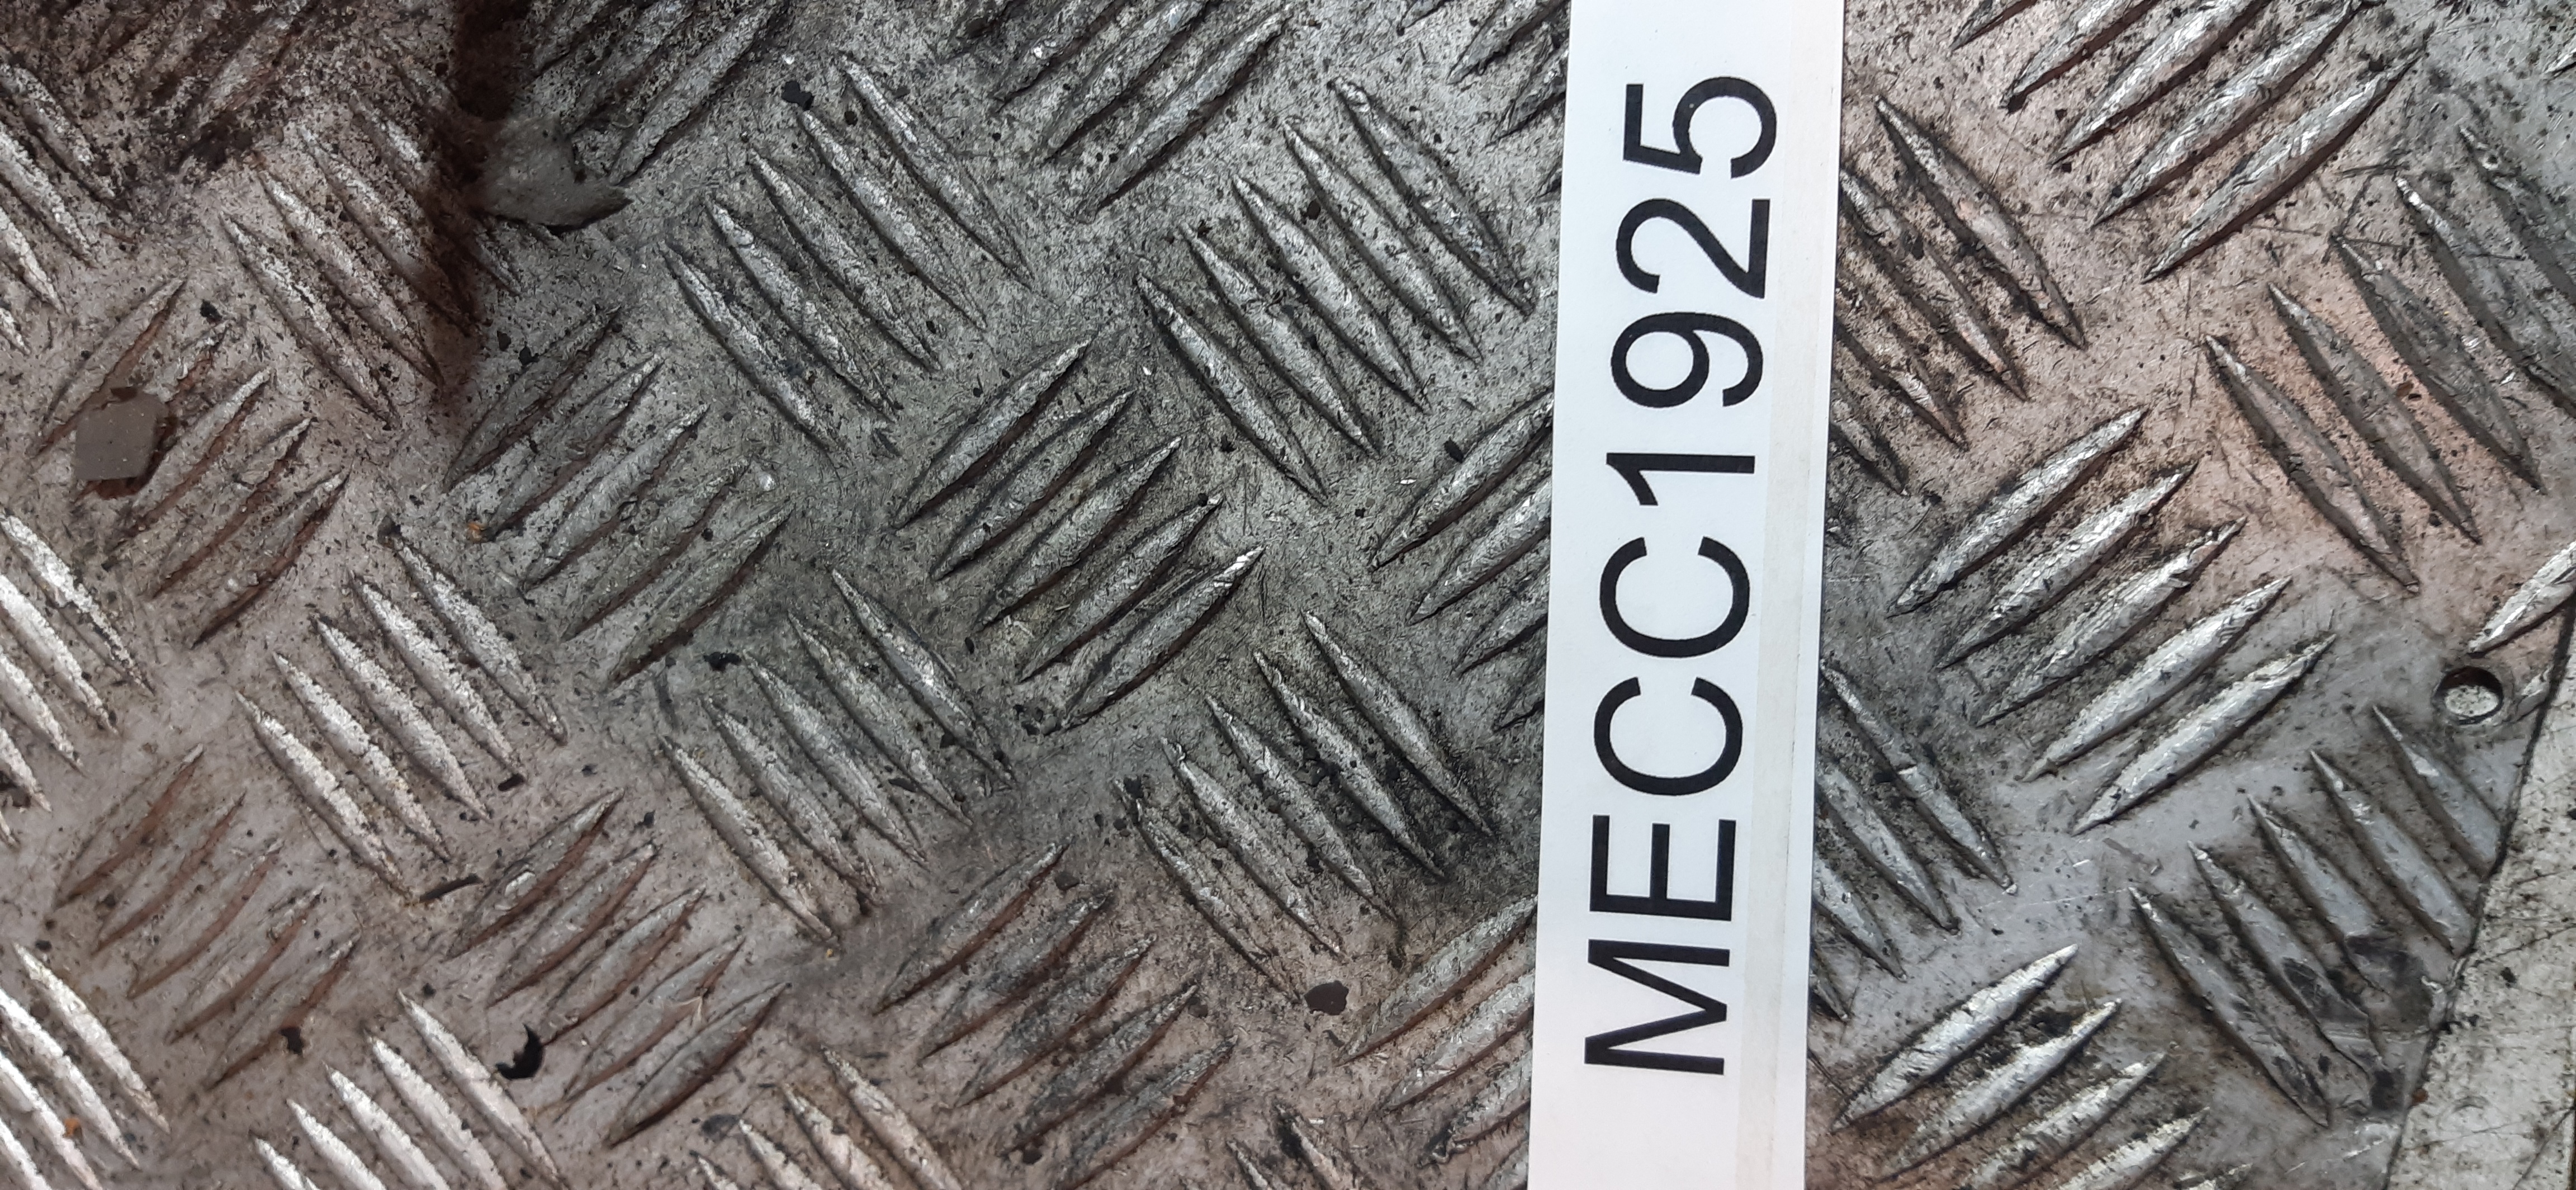 Mozzo Ant SX Peugeot 208 1.4HDI 2013/2014 5P 8H01 MECC1925